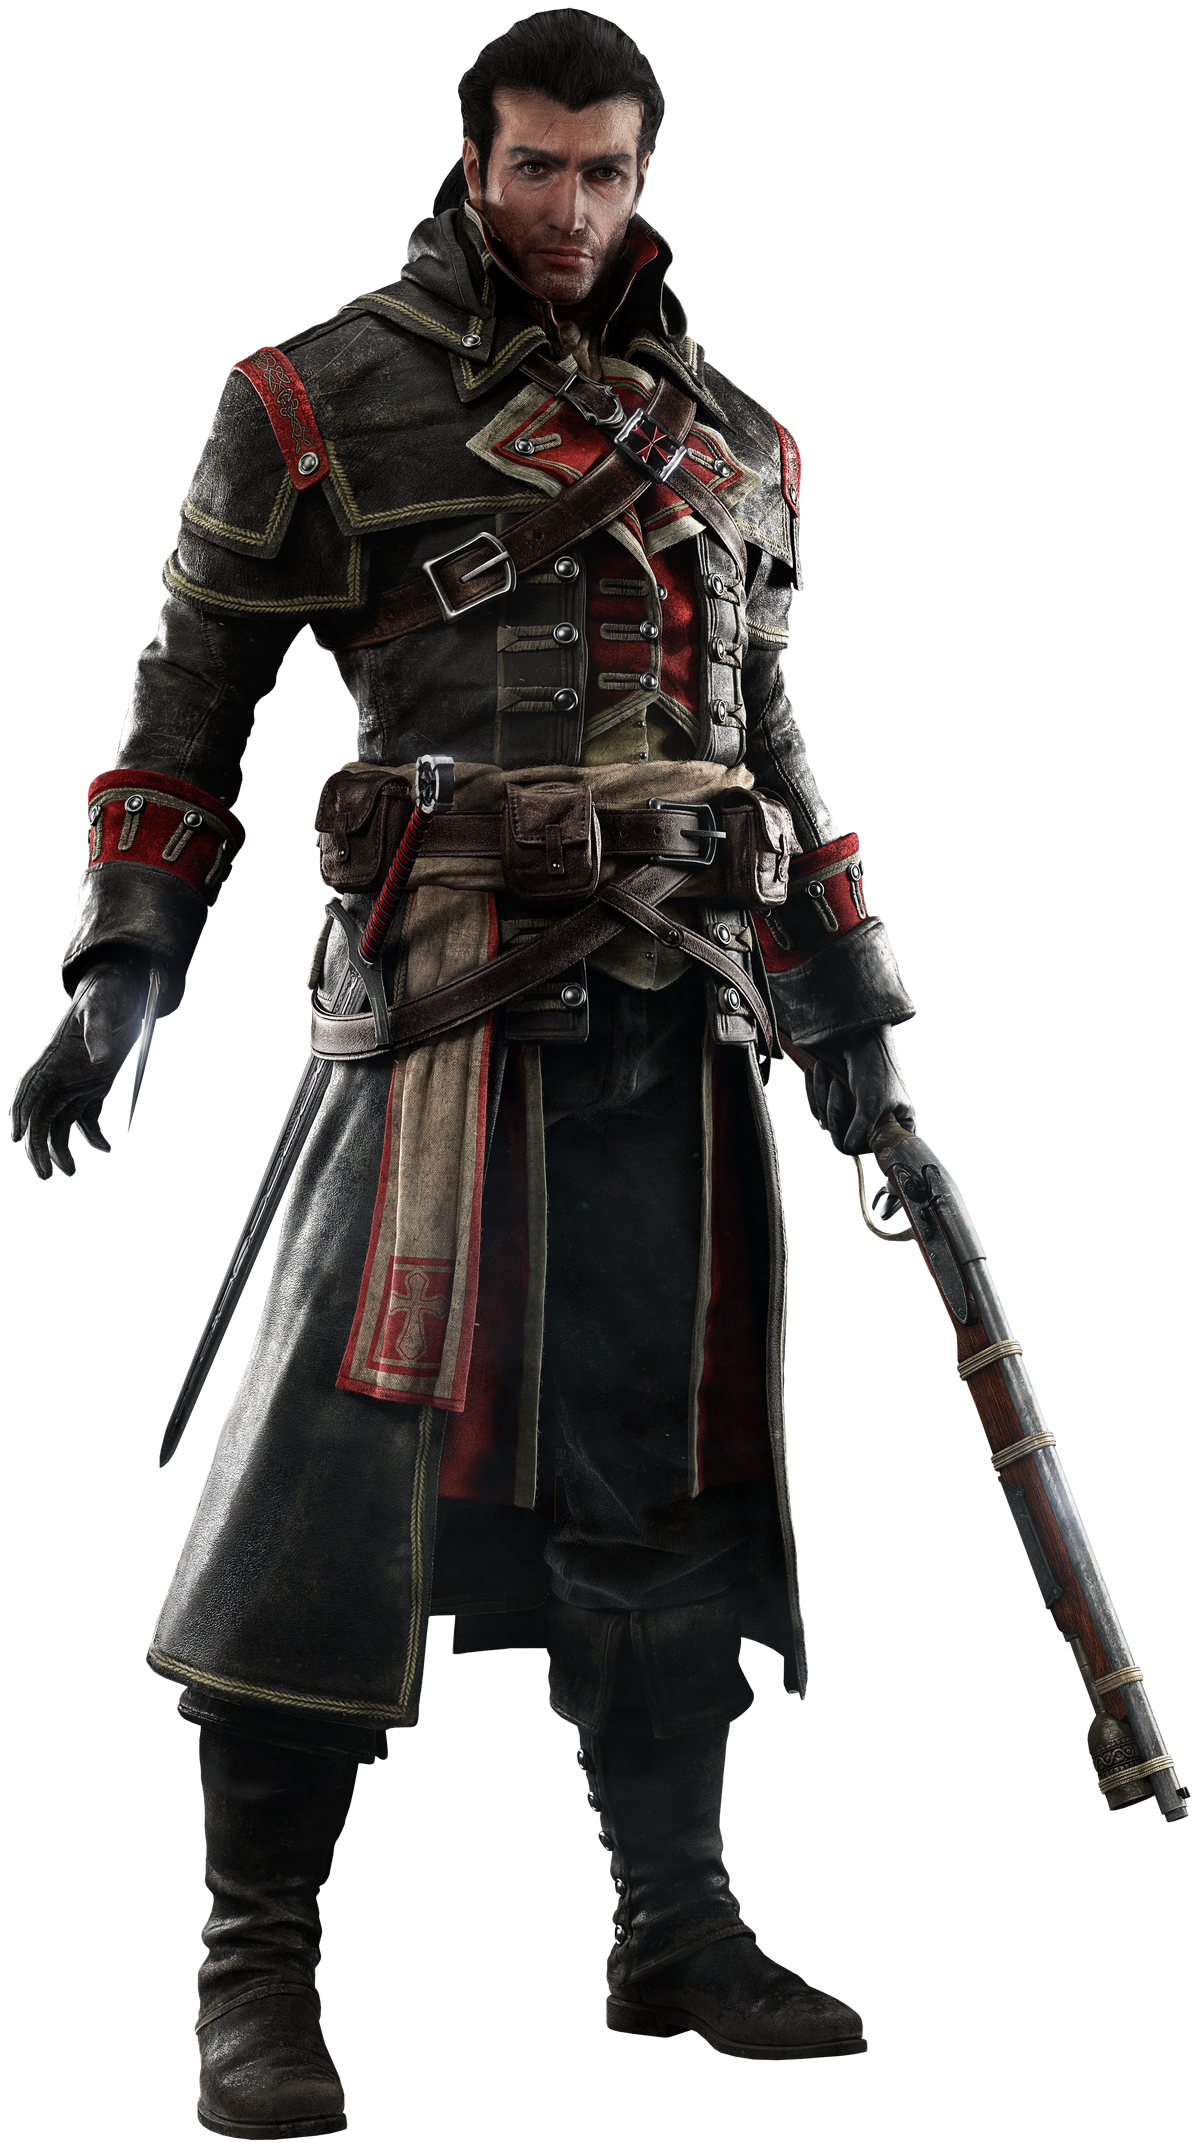 O Mistério do Cavaleiro sem Cabeça em Assassin's Creed Rogue 